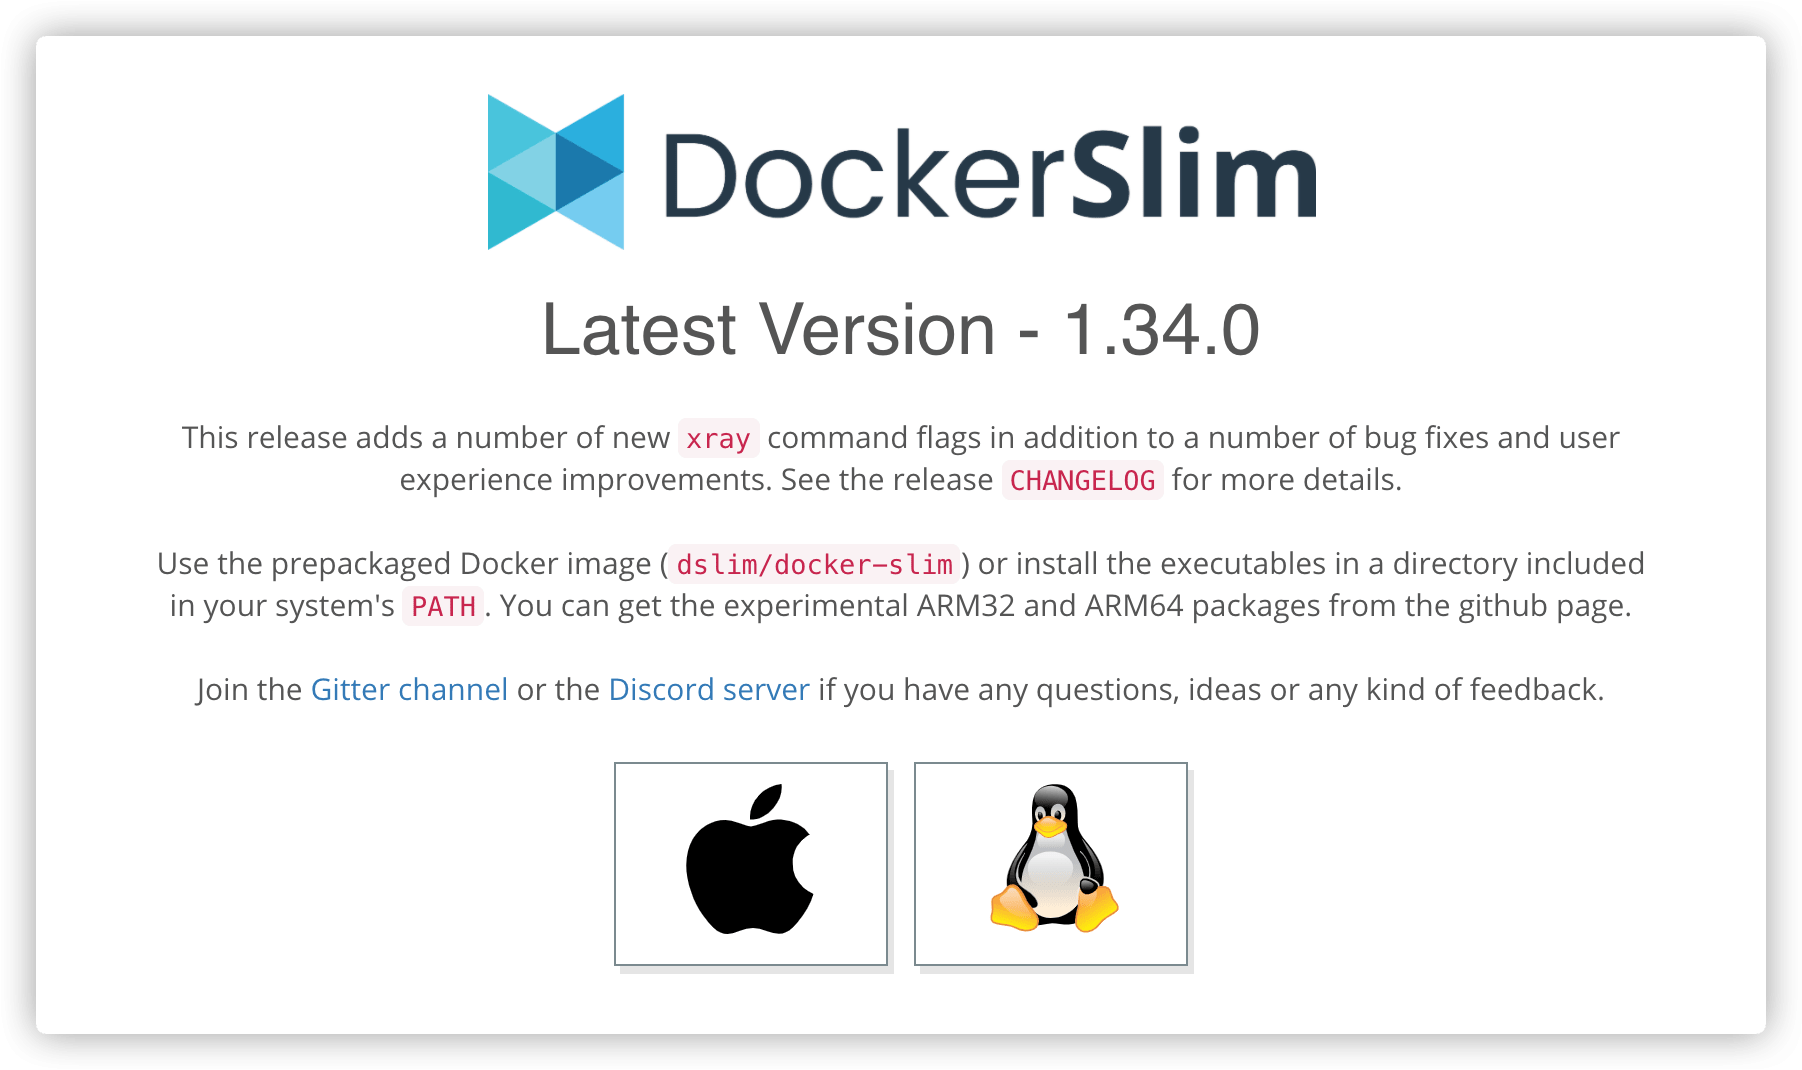 逆向解析Docker镜像文件 - docker-slim